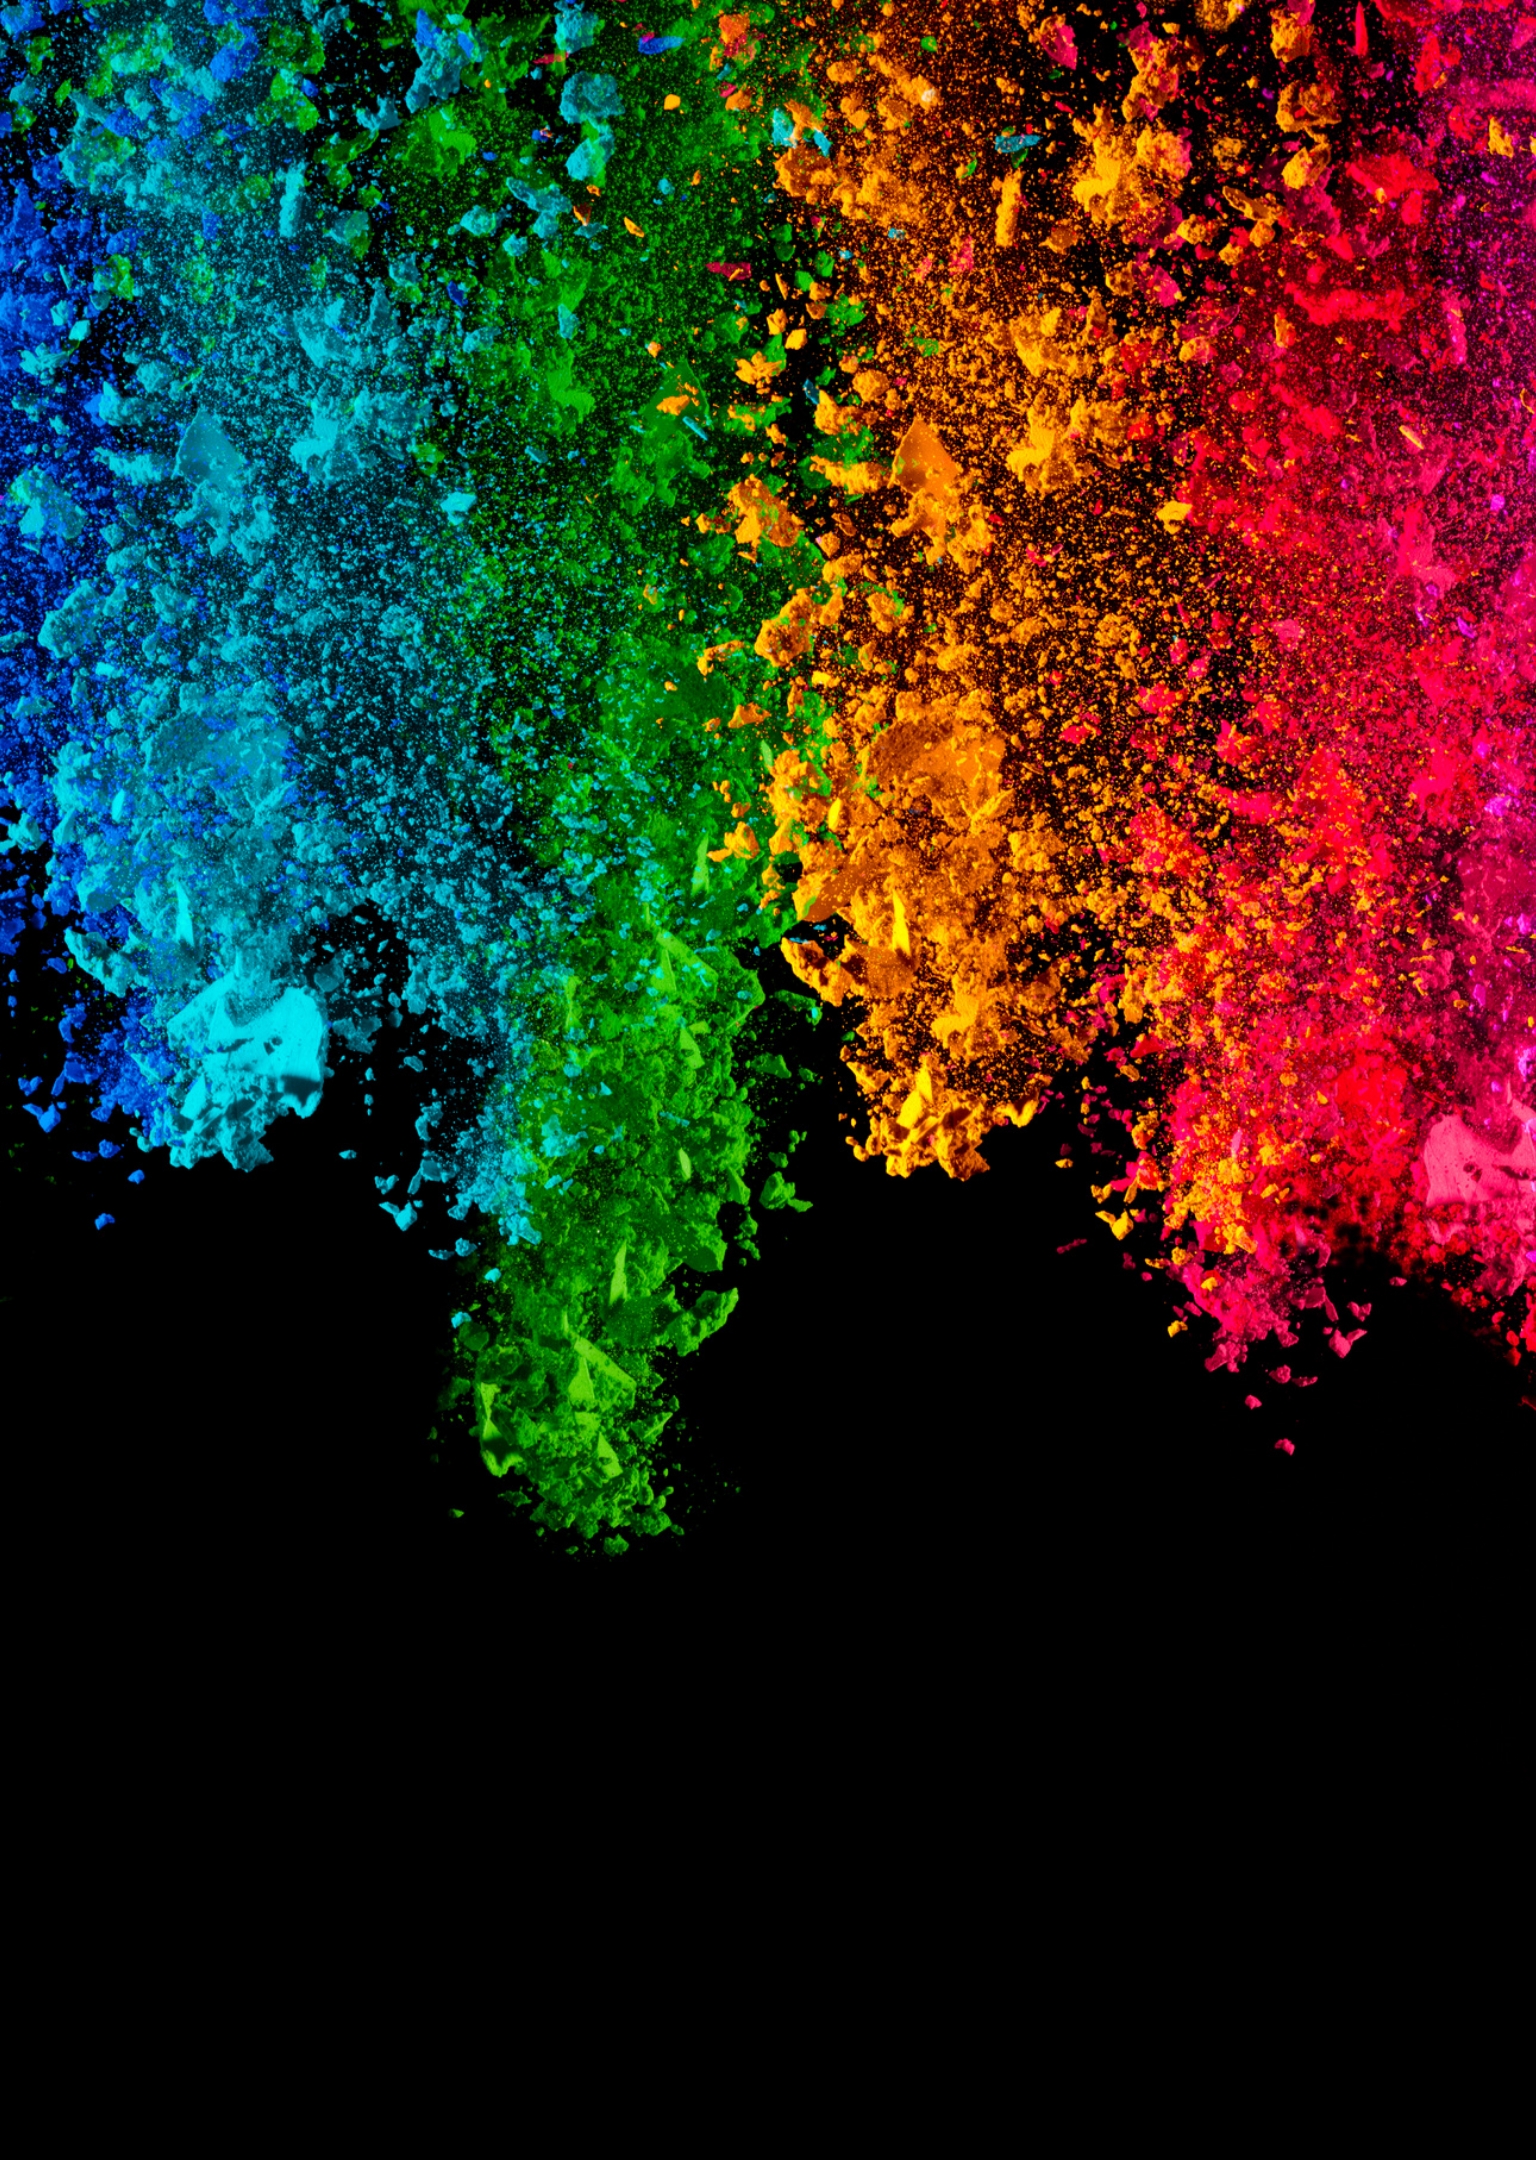 Farbexplosion